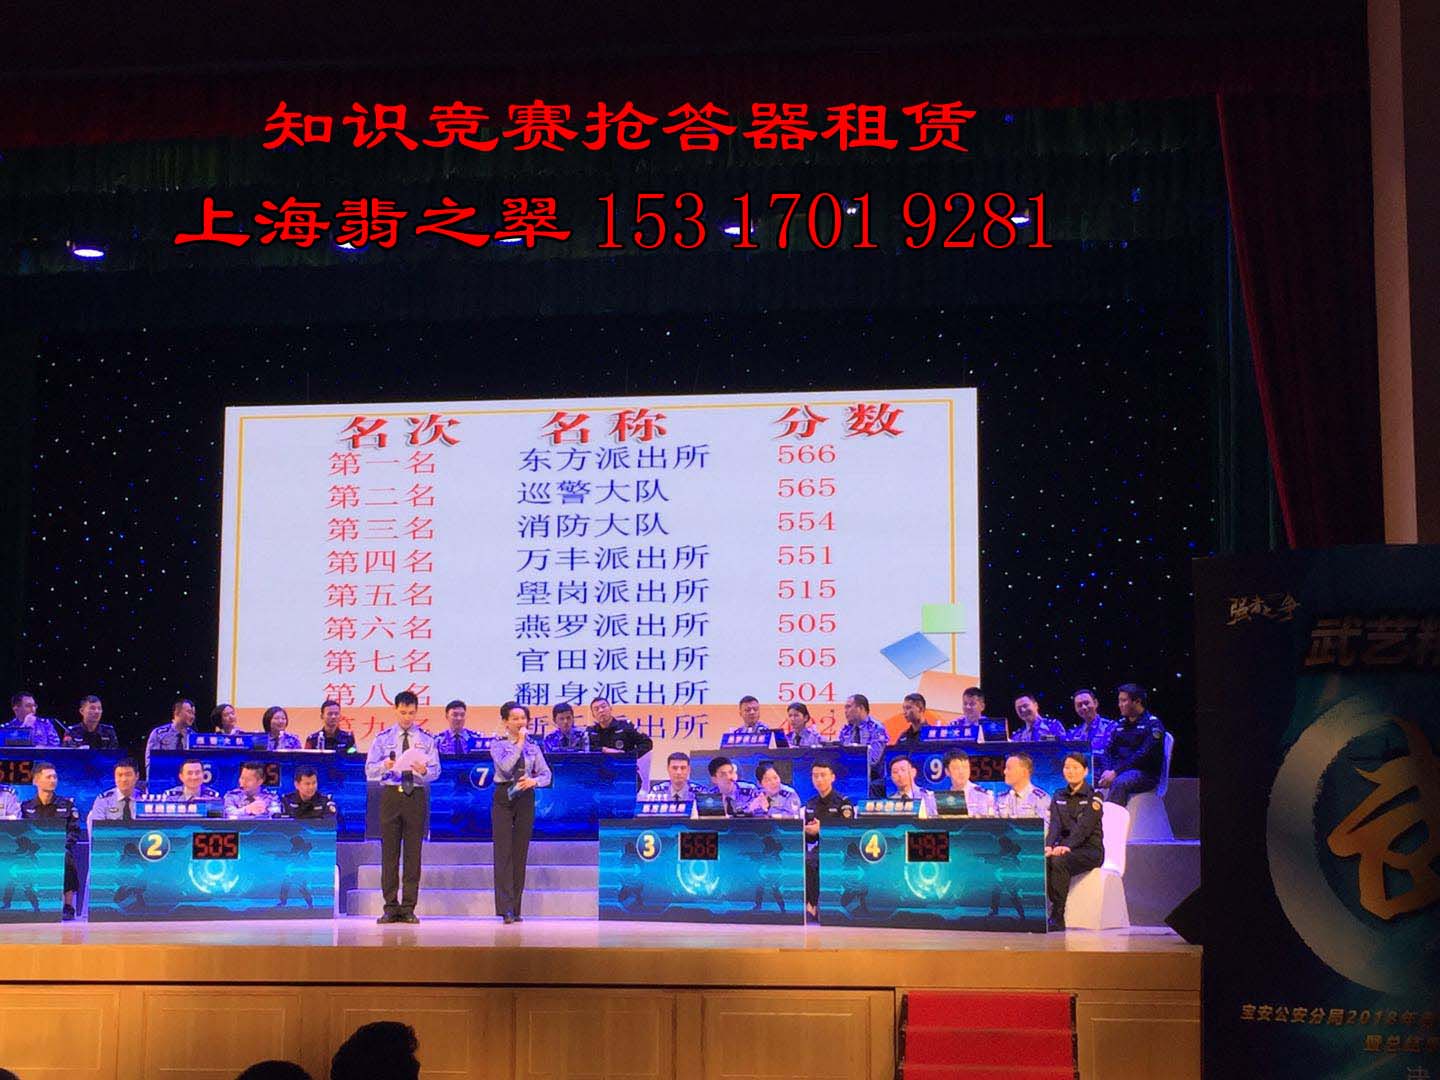 上海较新投票器/表决器/抢答器/评分系统/各类会议展会 上海翡之翠文化，舞台互动专家。